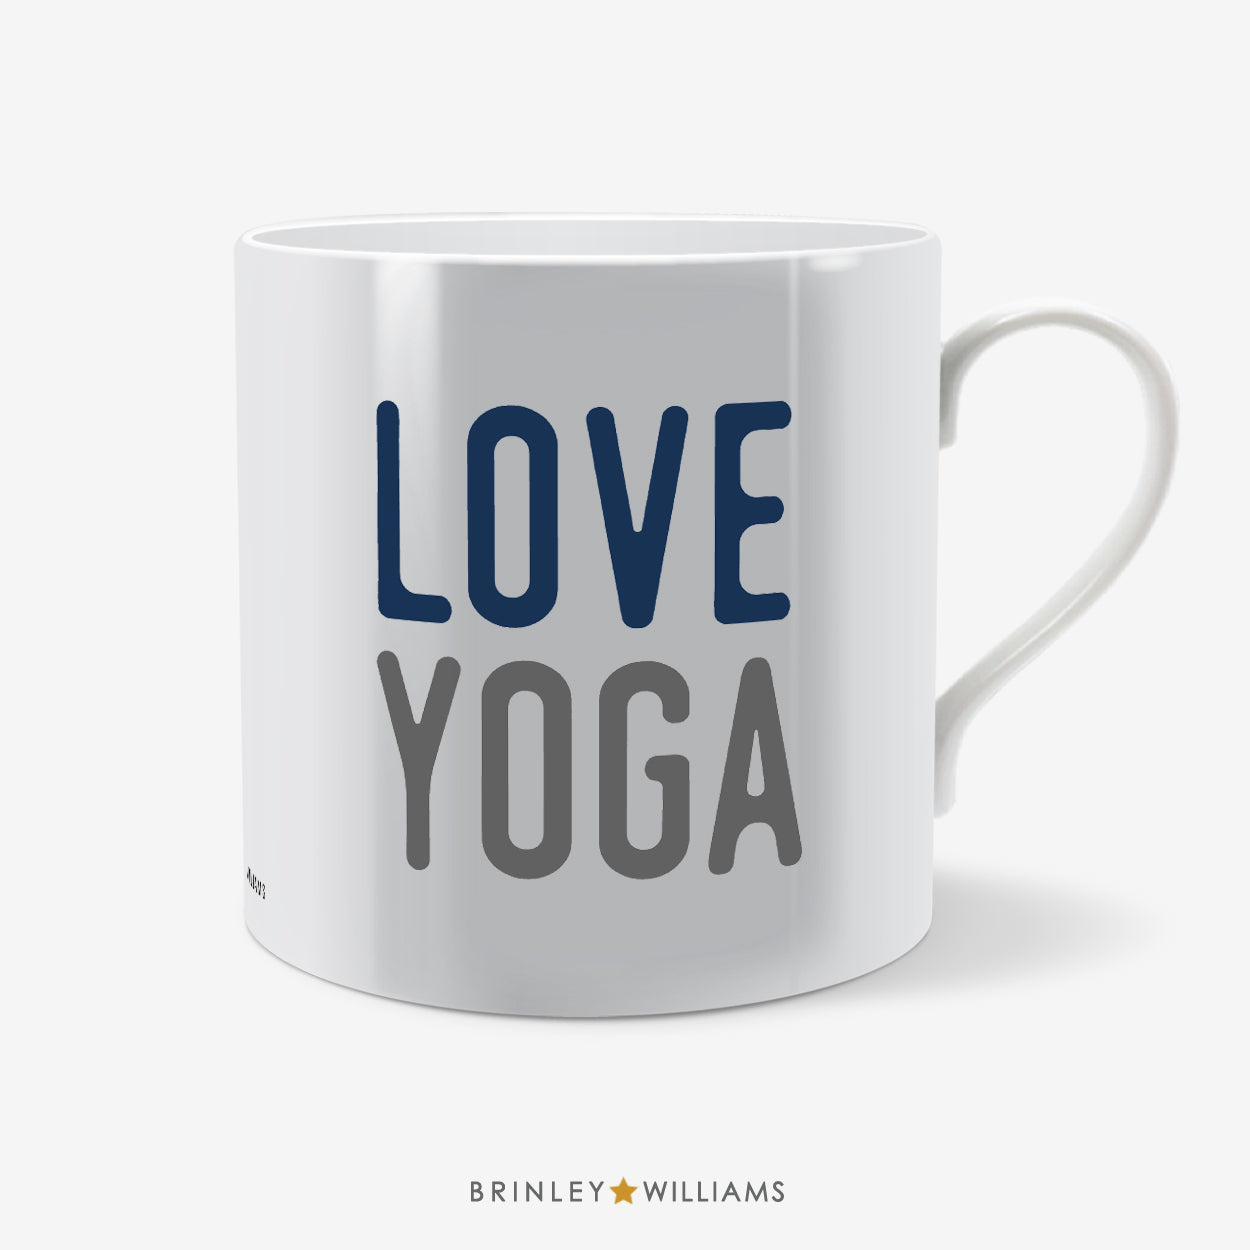 Love Yoga Mug - Navy